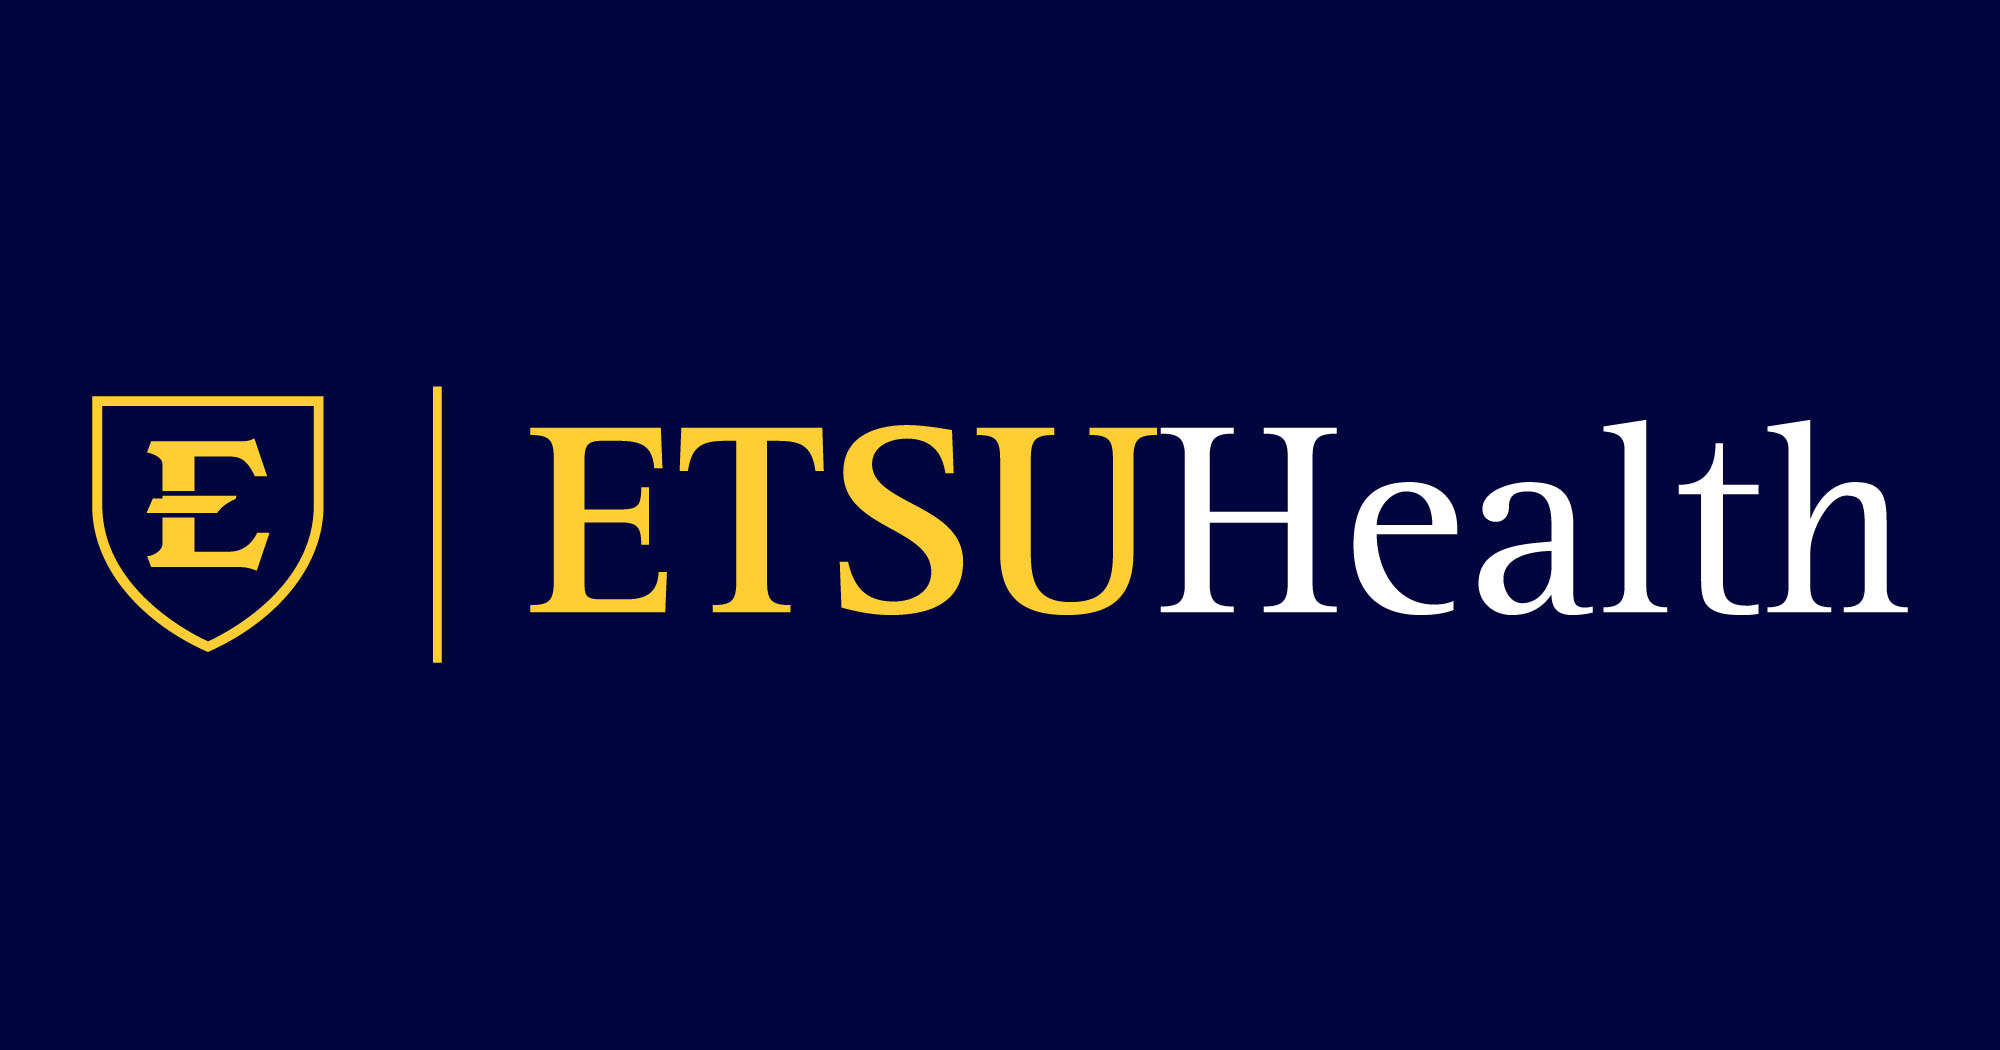 ETSU Health